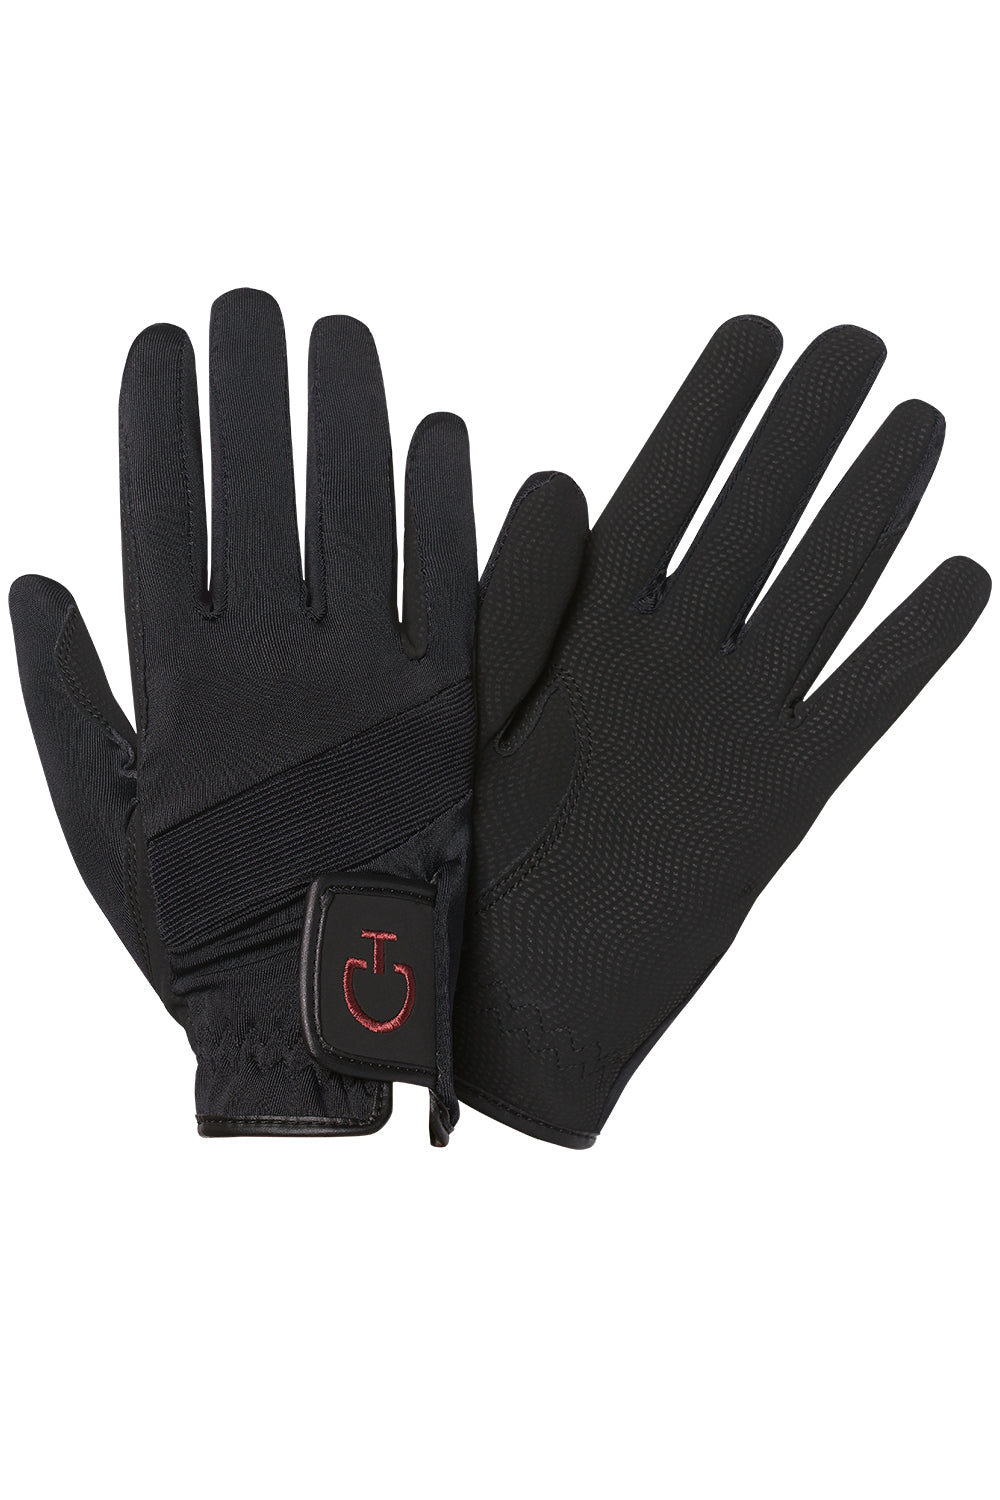 Cavalleria Toscana Tech Gloves